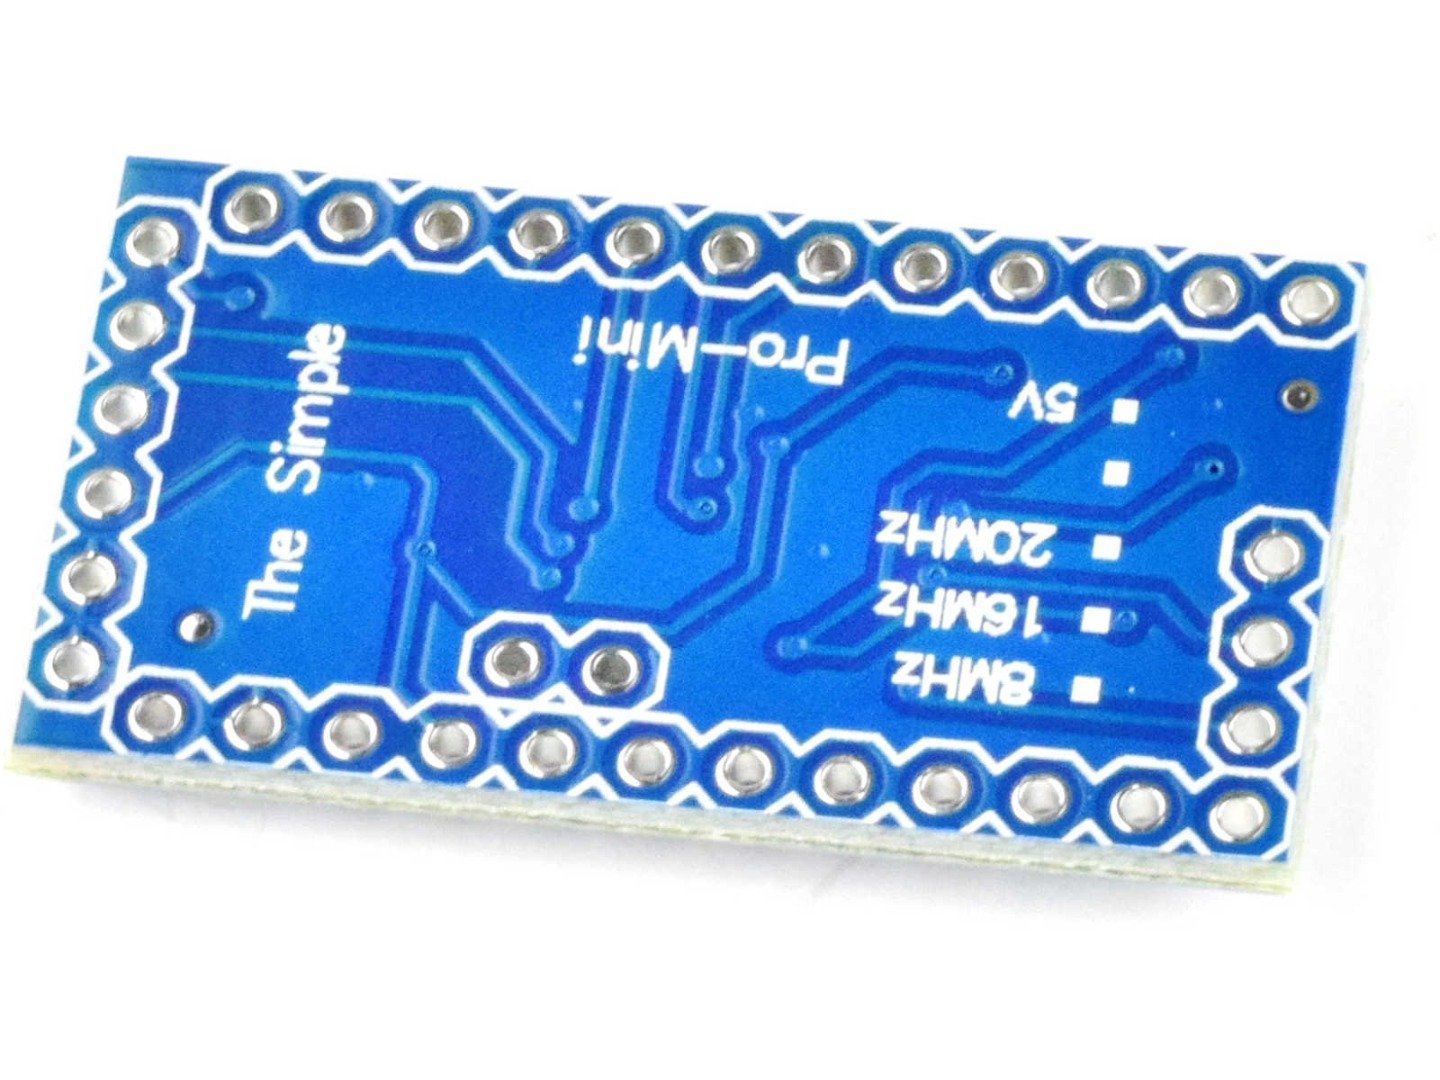 Pro Mini module ATmega328P 3.3V, 8MHz (100% compatible with Arduino) 9